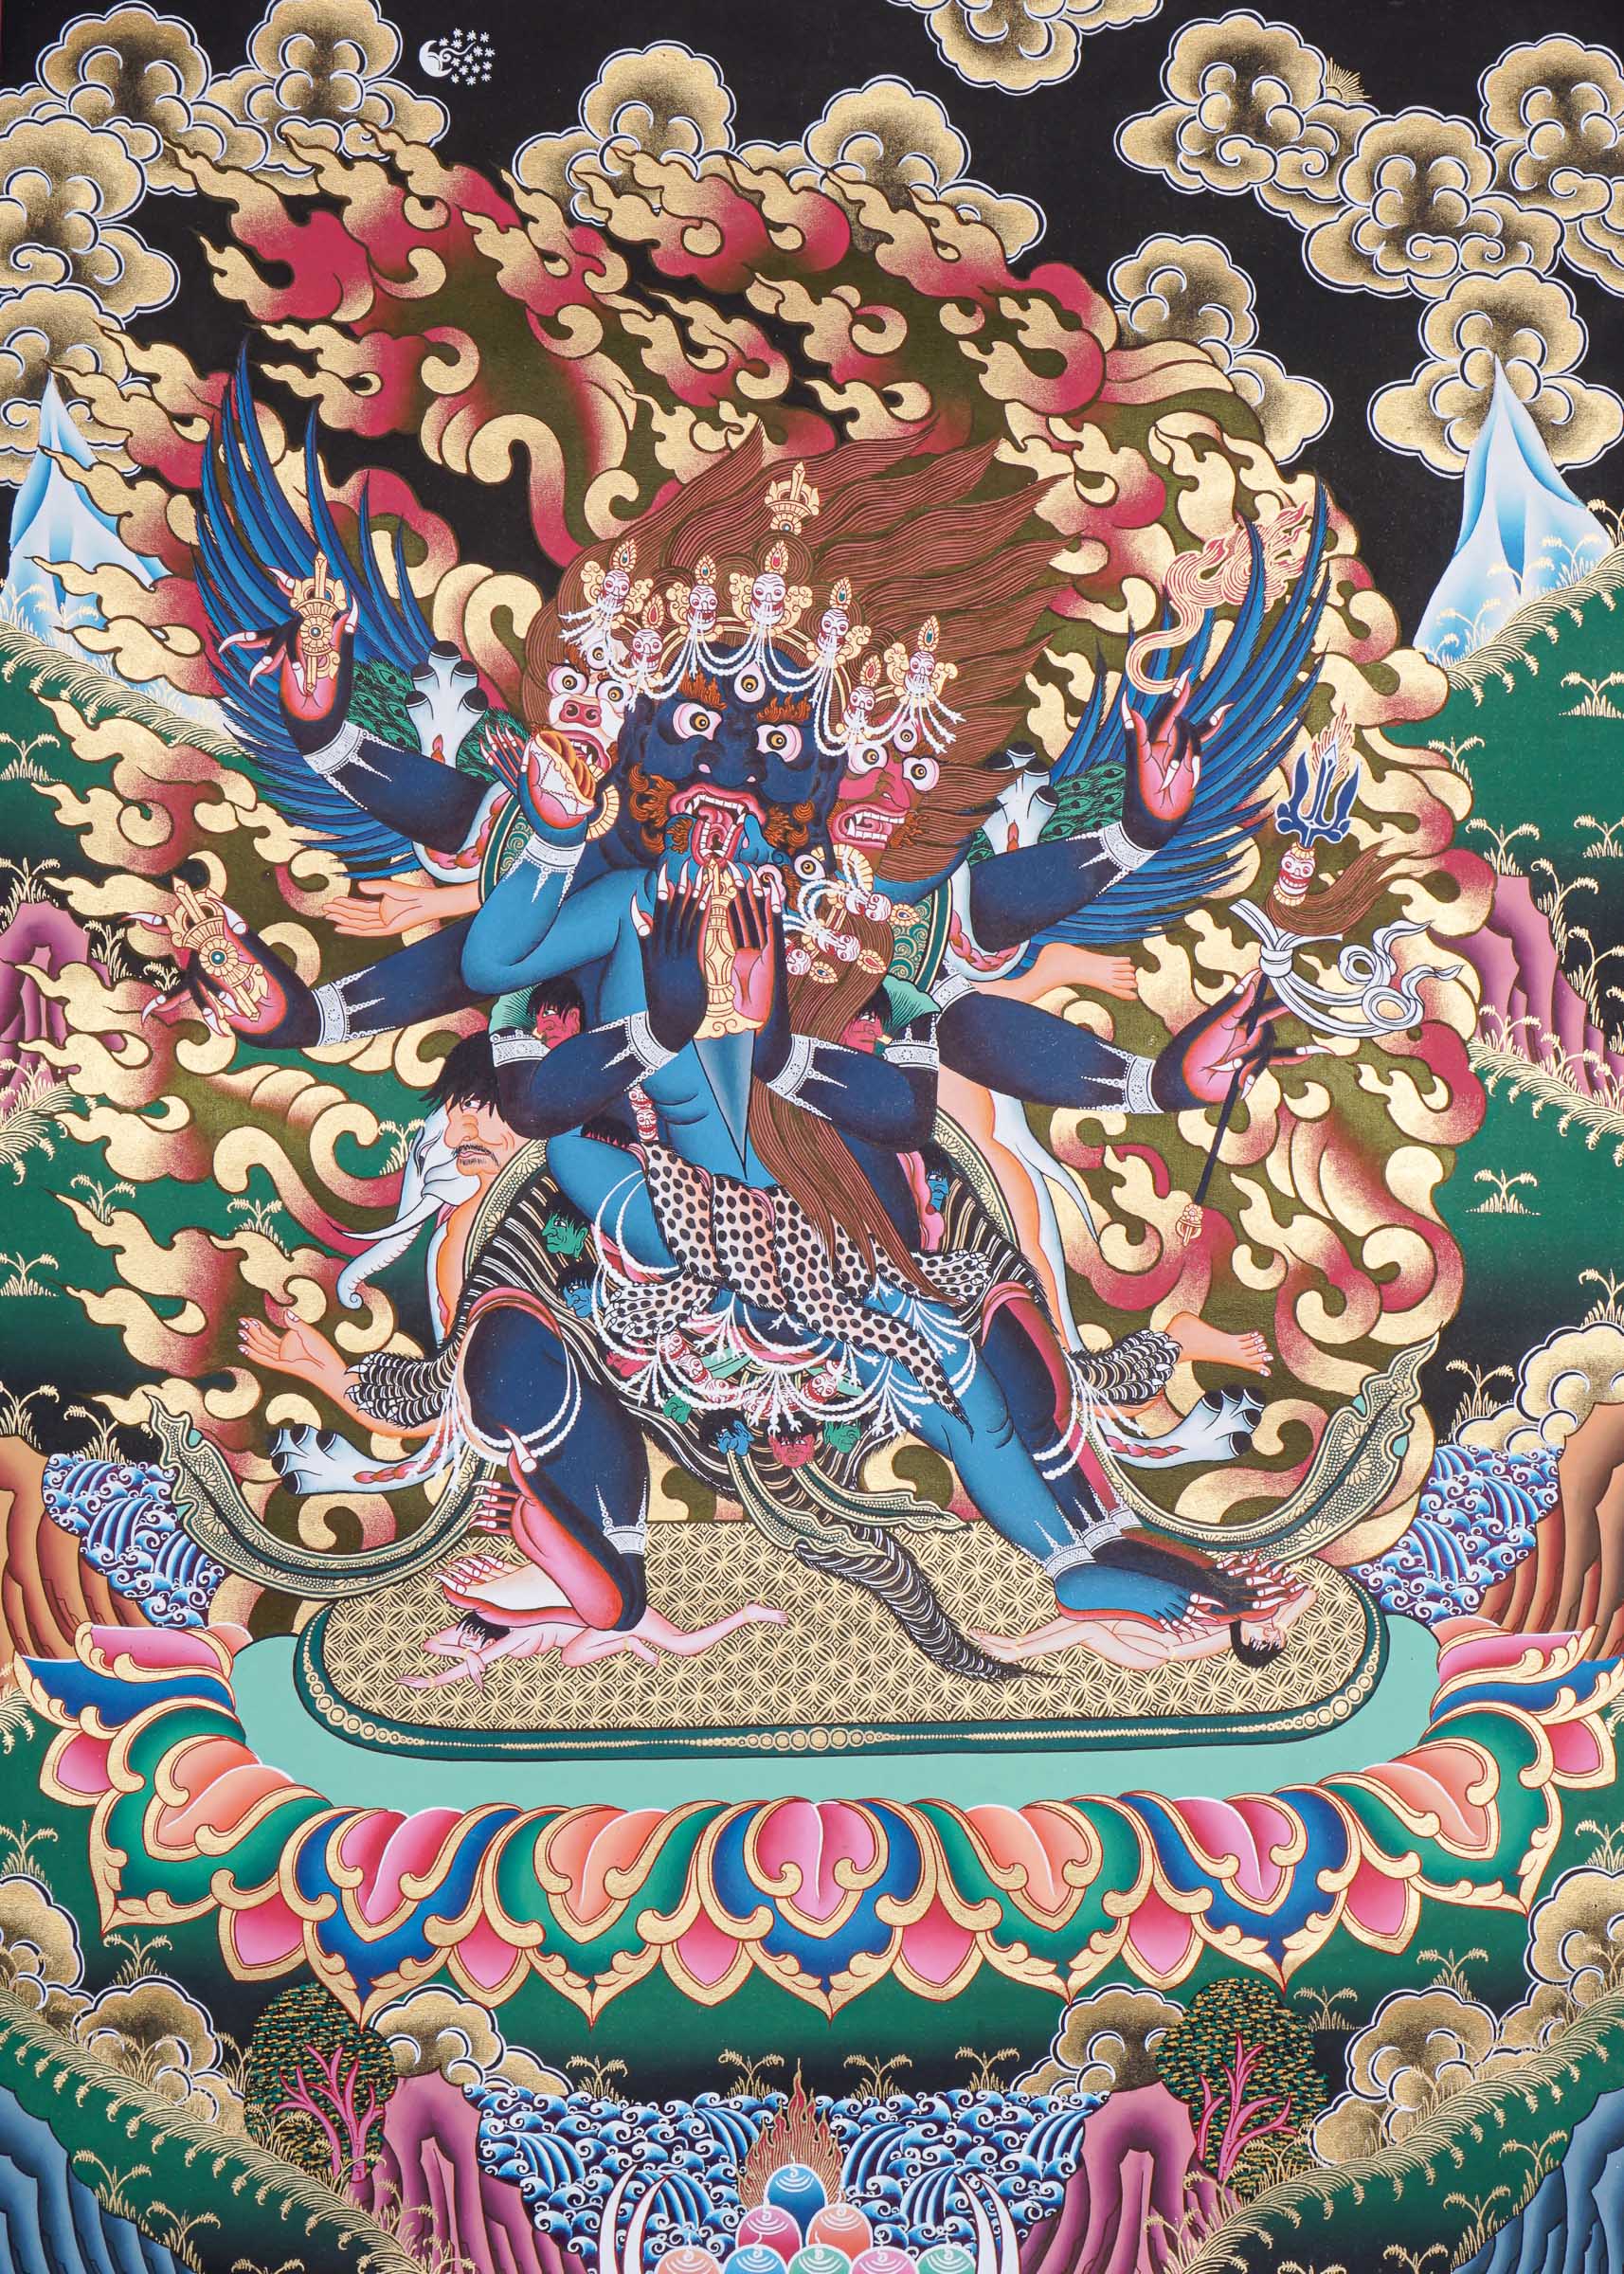 Vajrakilaya Thangka - Wrathful Deity Painting